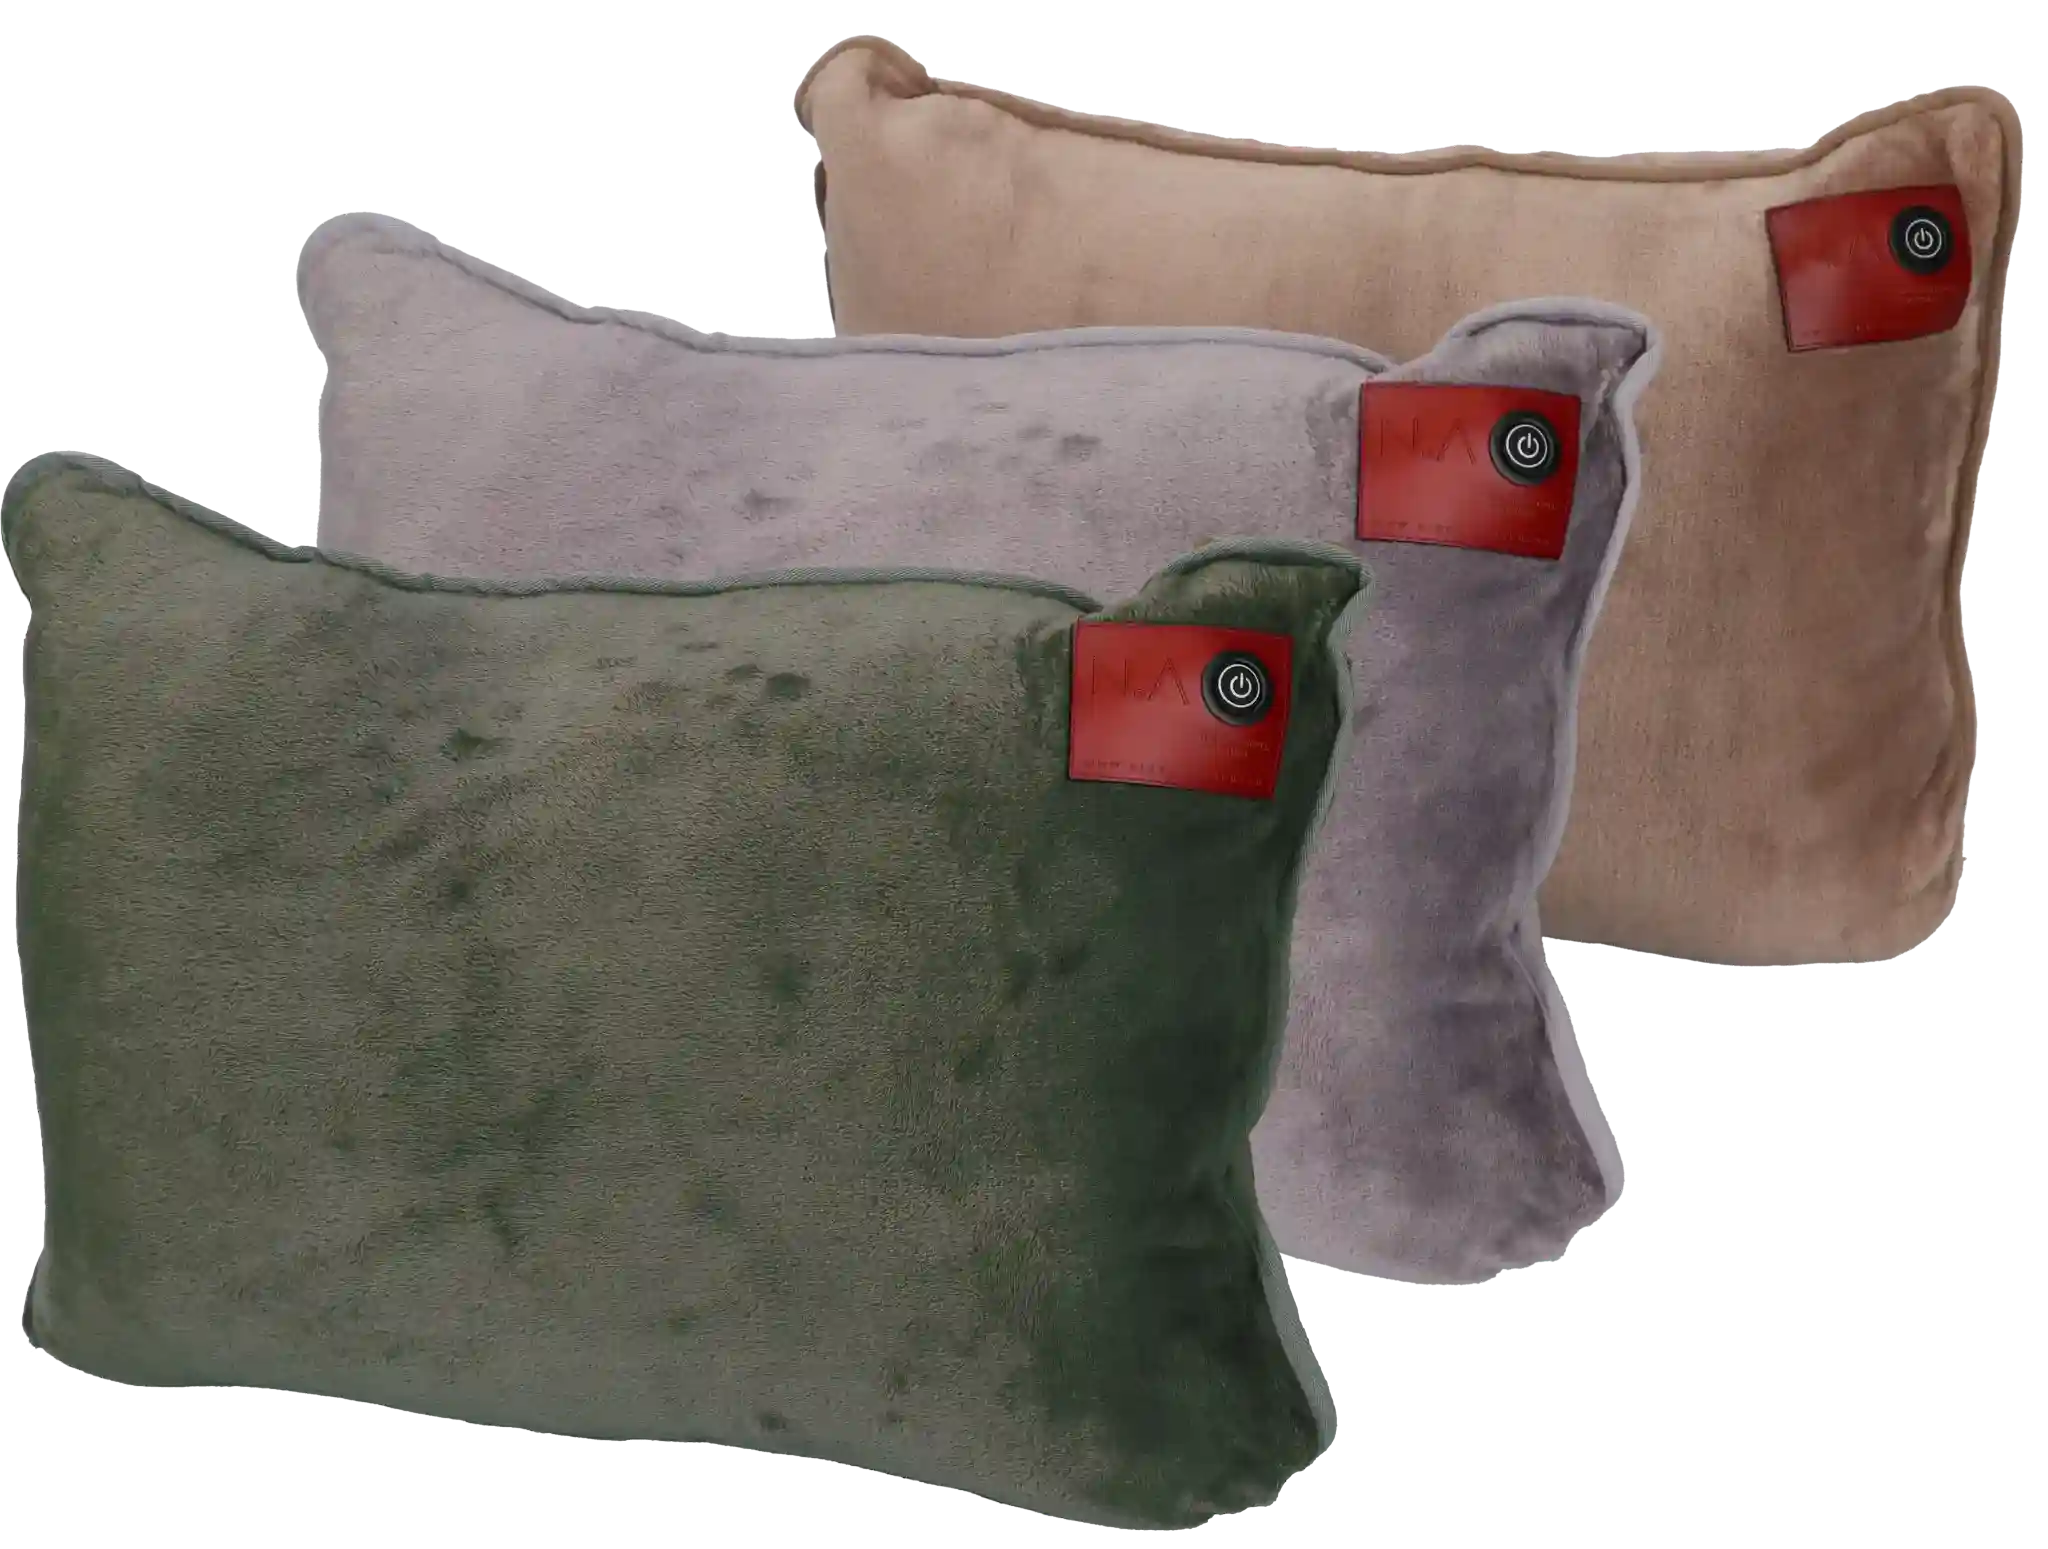 elektrische-warmte-kussens-rug-nek-verwarmingselementen-teddy-fleece-pillow-3-colors-nikki-amsterdam-beste-warmtekussen